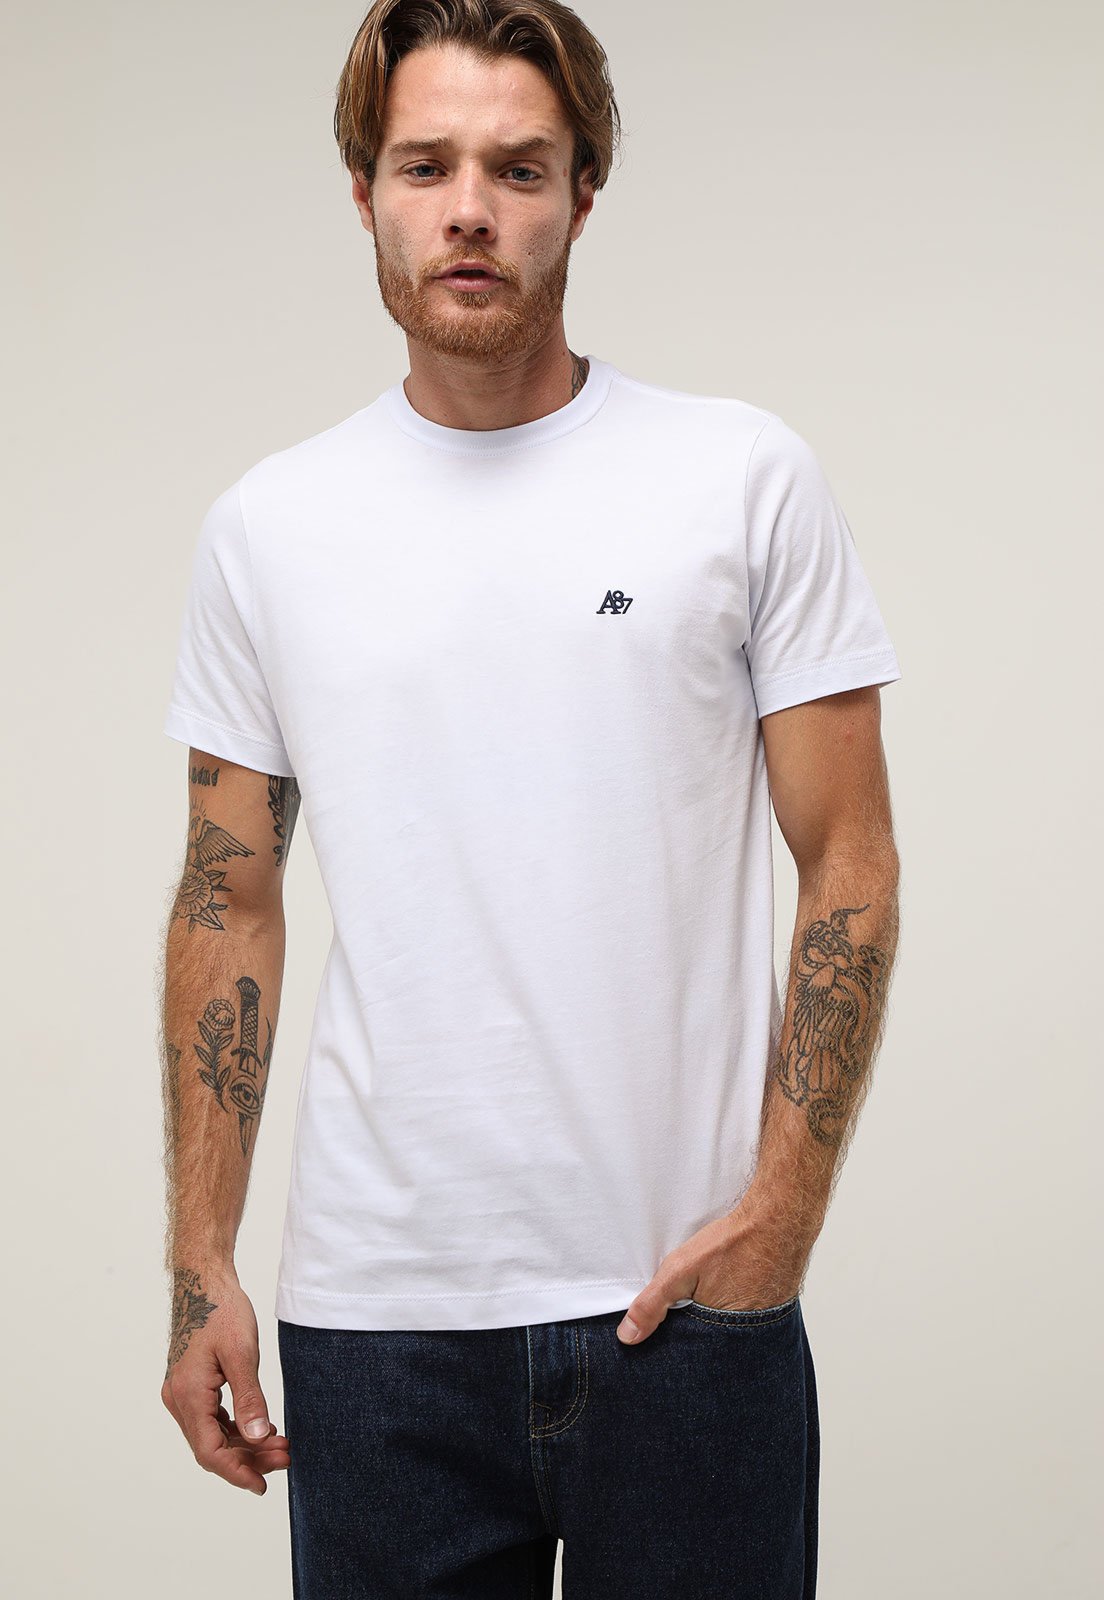 Camiseta Com Inscrições- Branca & Preta- Aeropostale - PRIVALIA